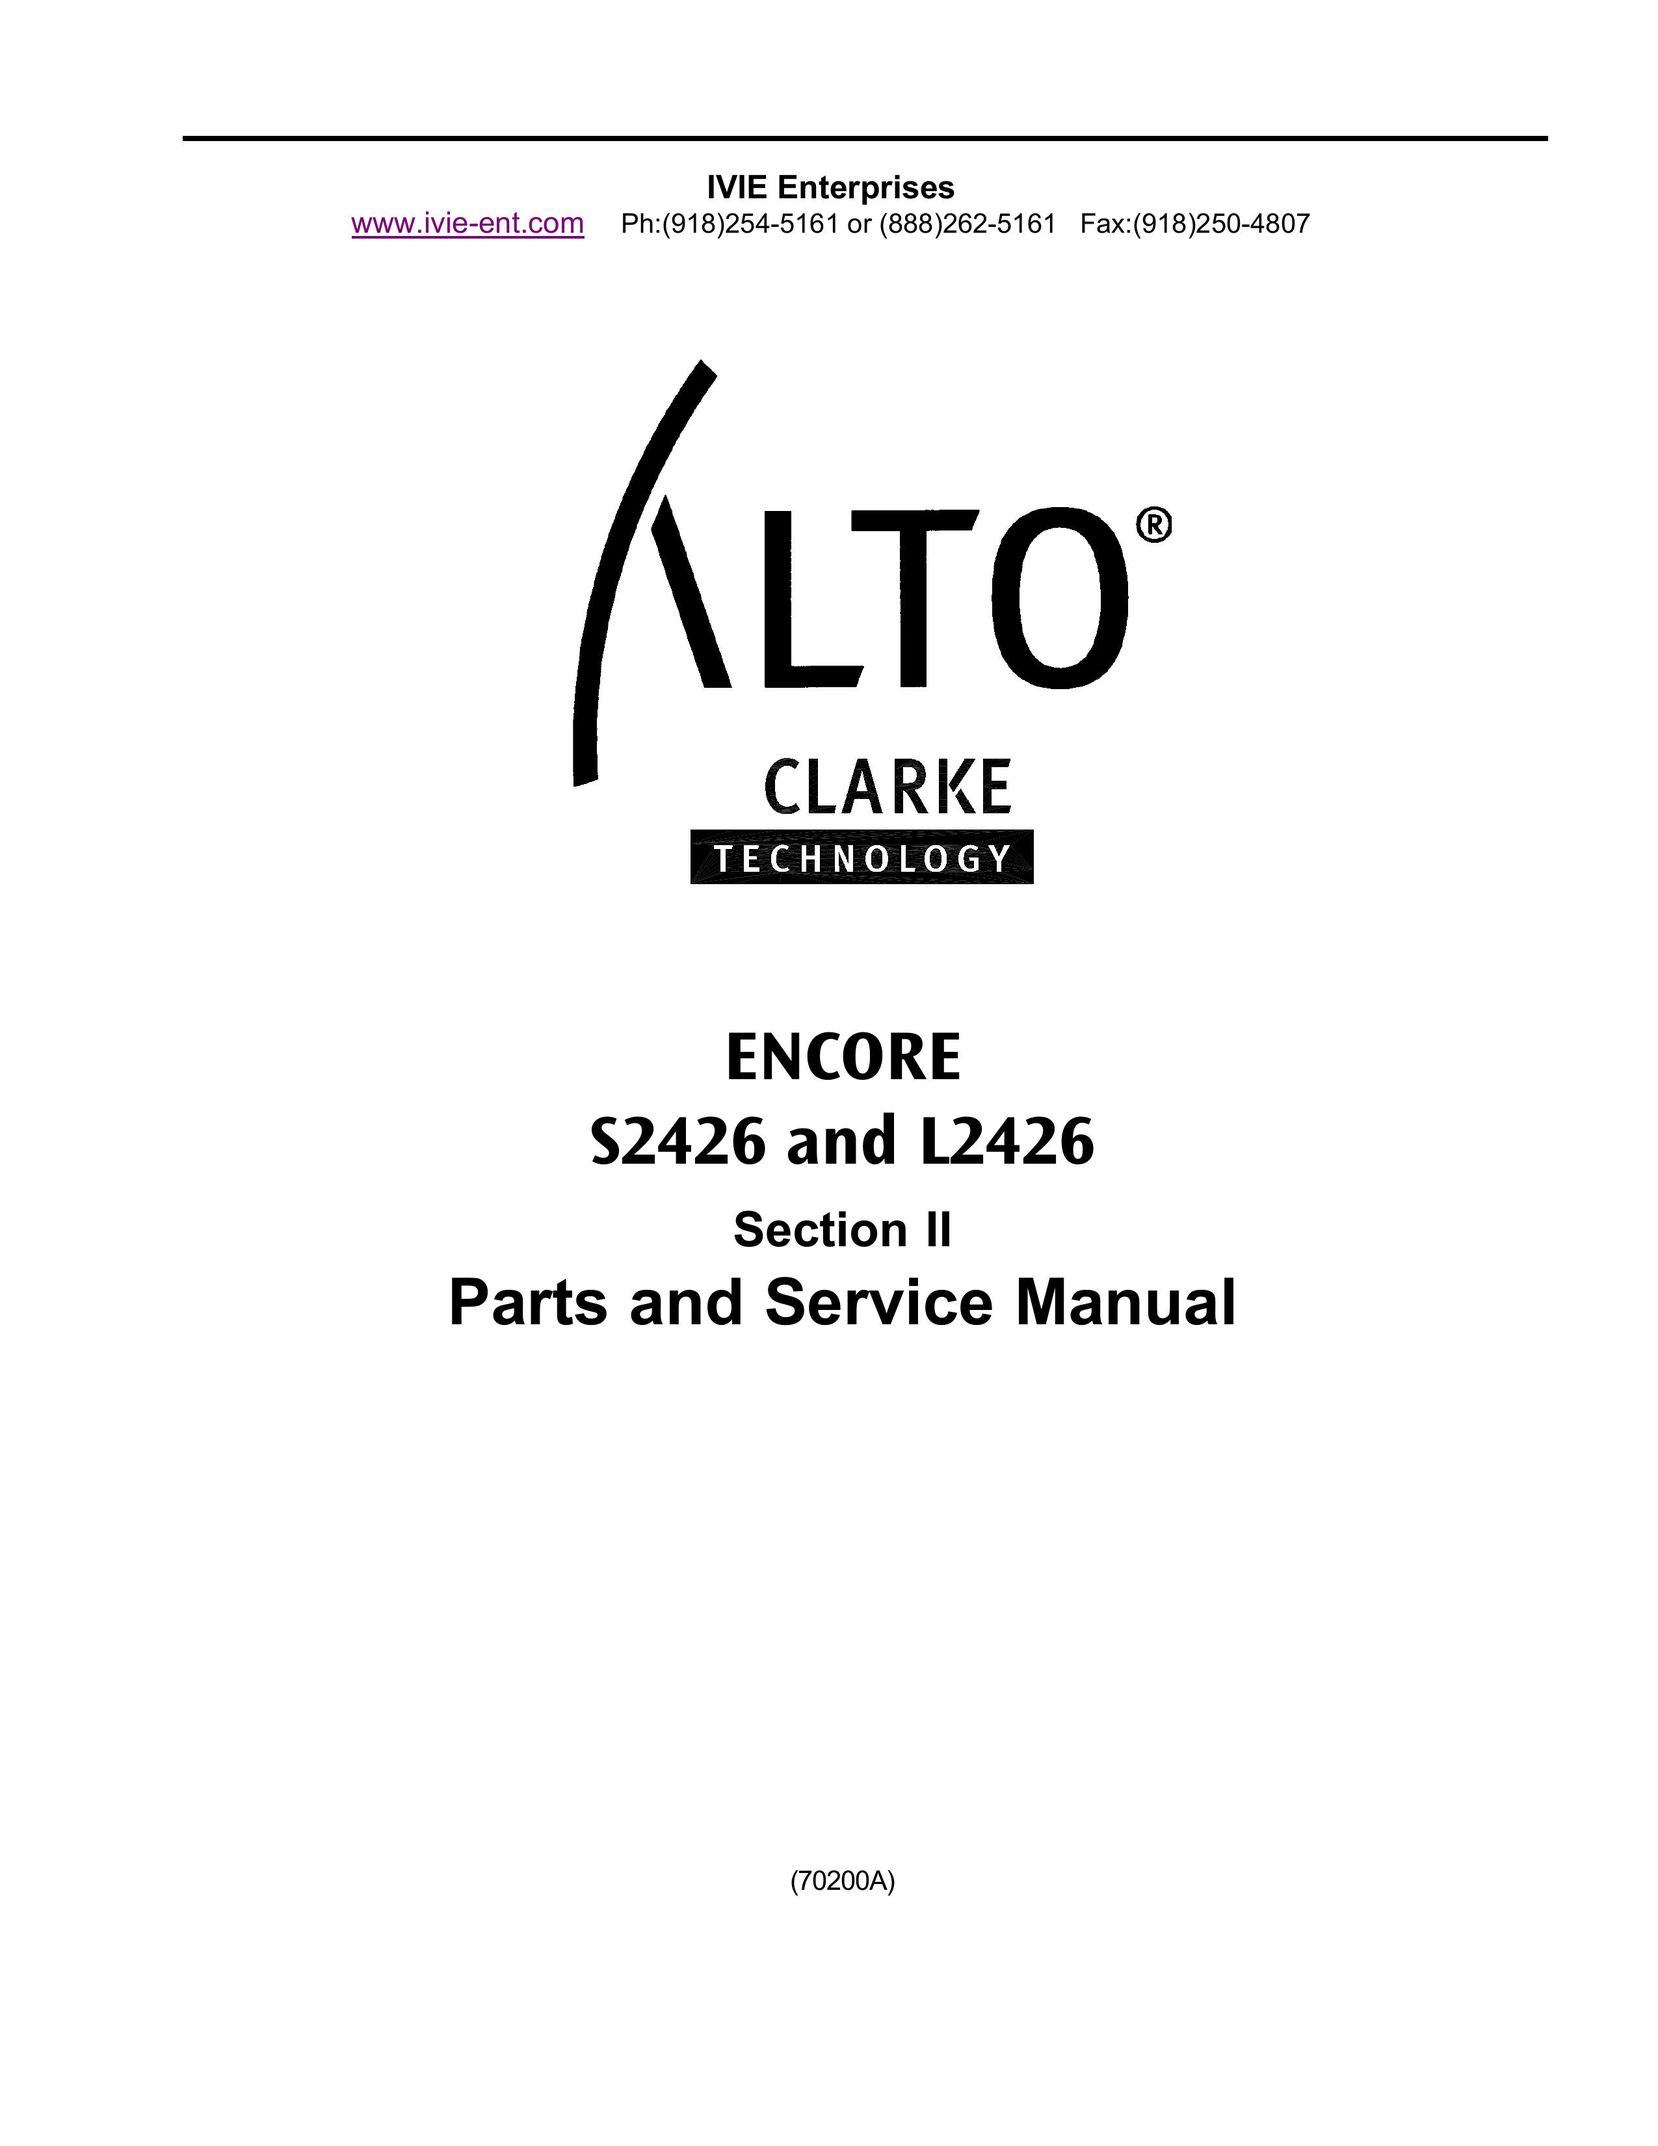 Clarke S2426 Carpet Cleaner User Manual